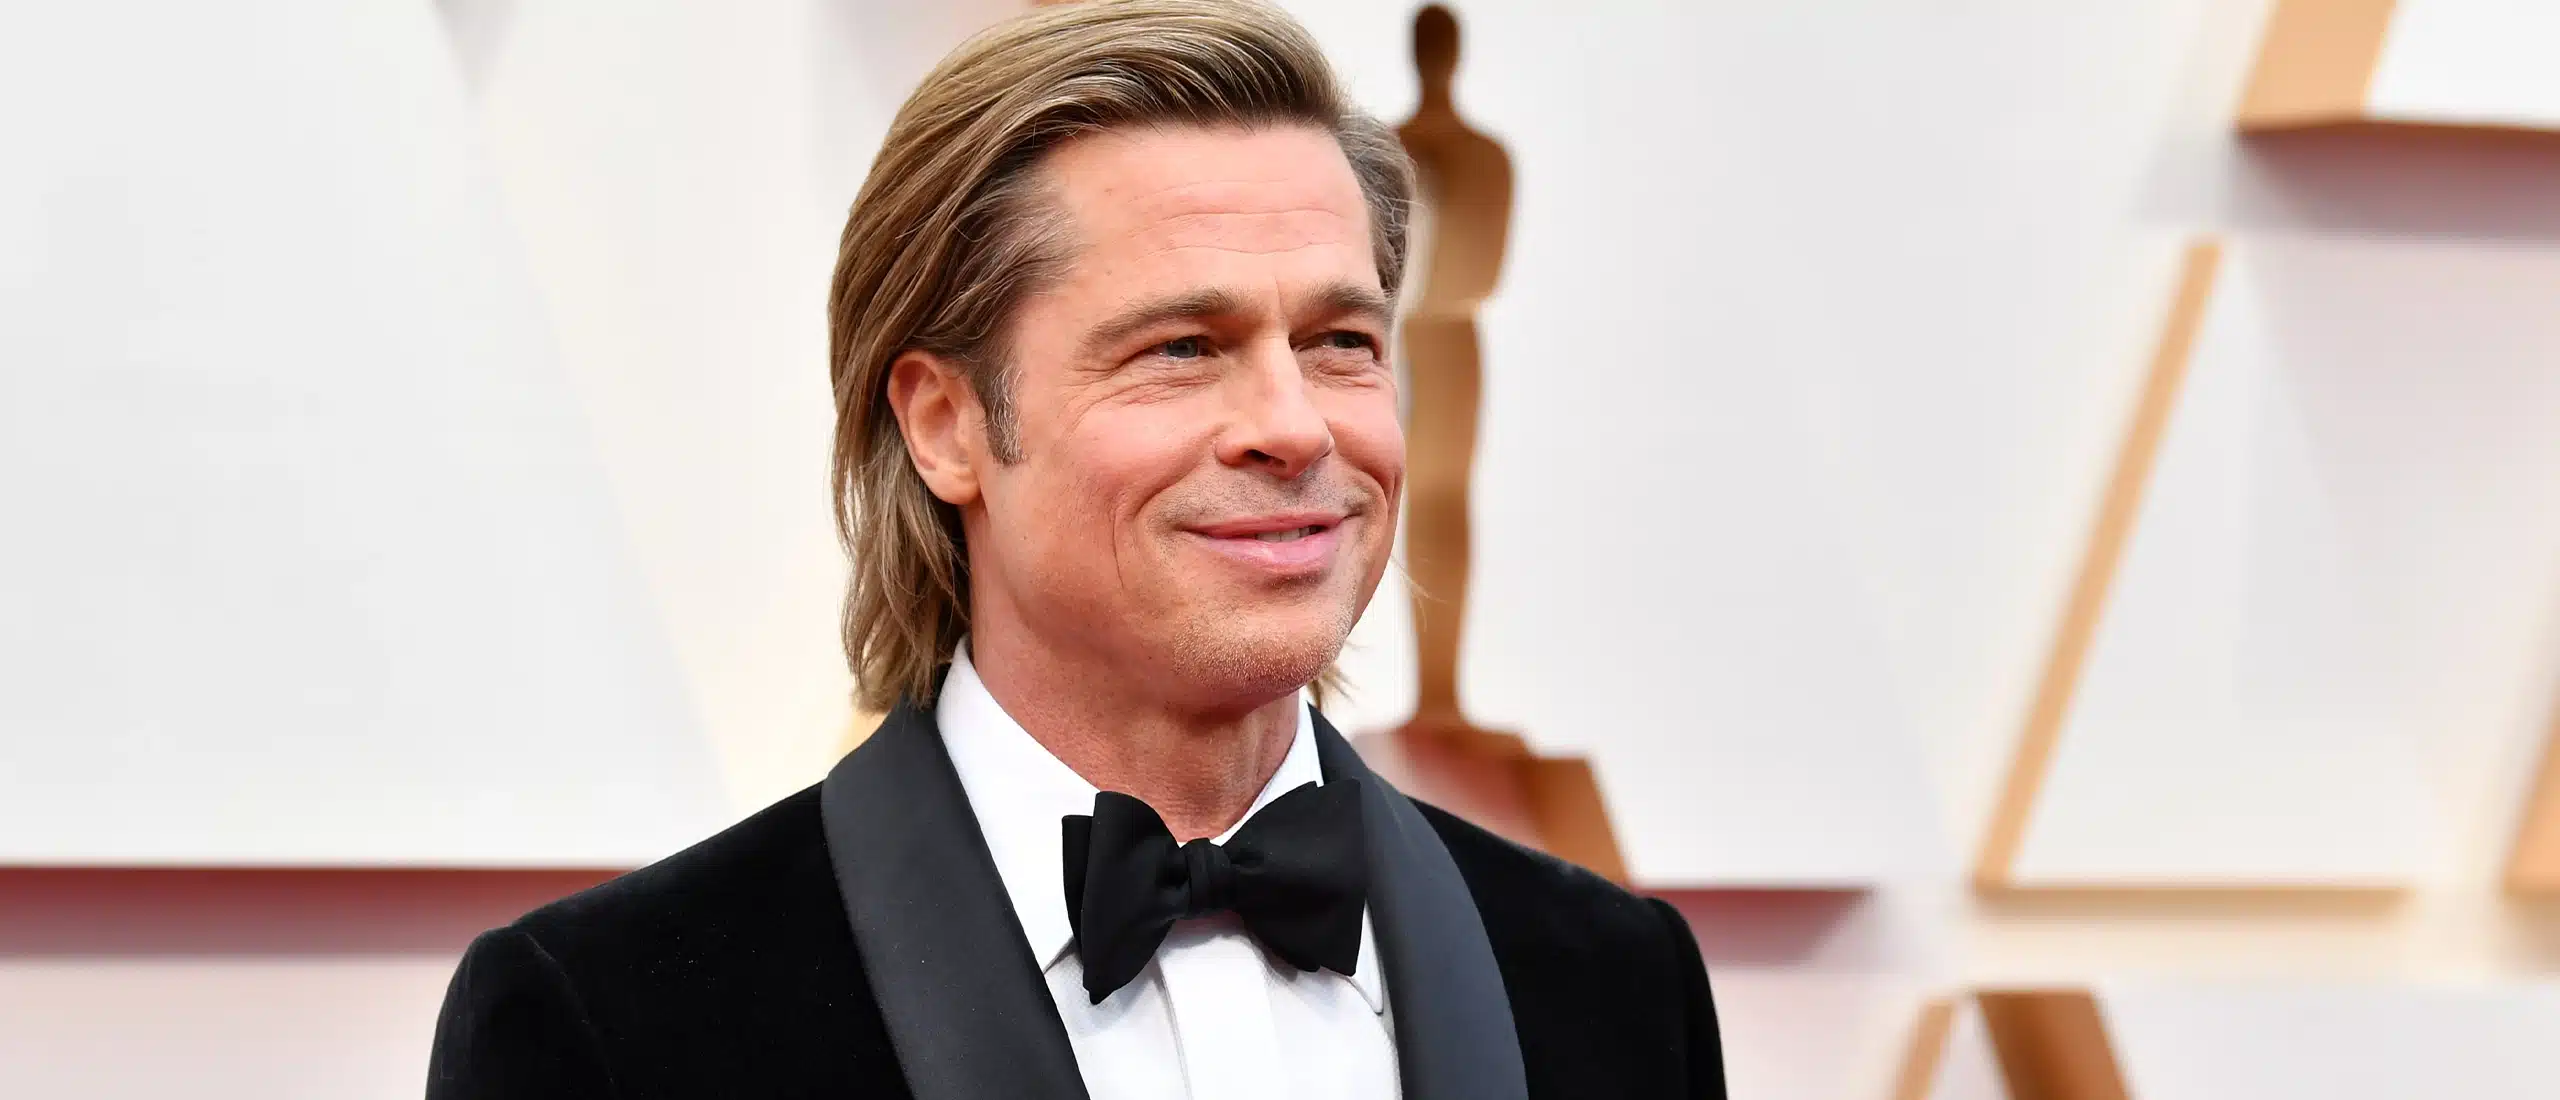 Brad Pitt at Oscars